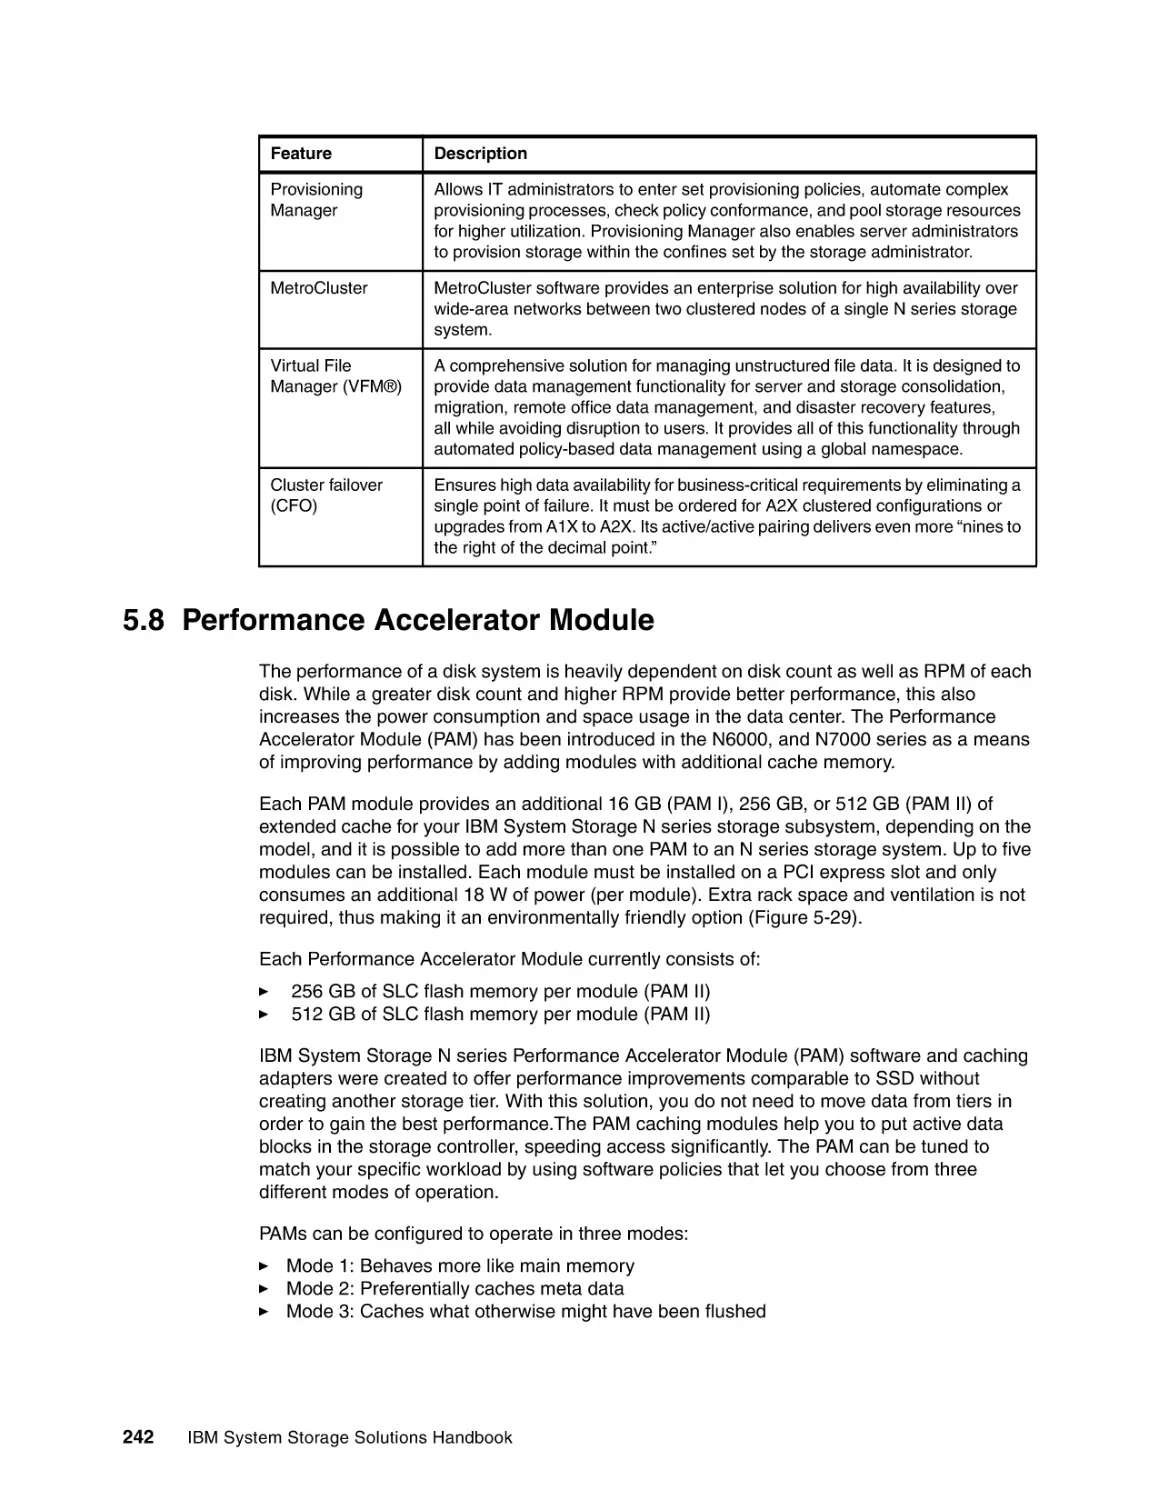 5.8 Performance Accelerator Module